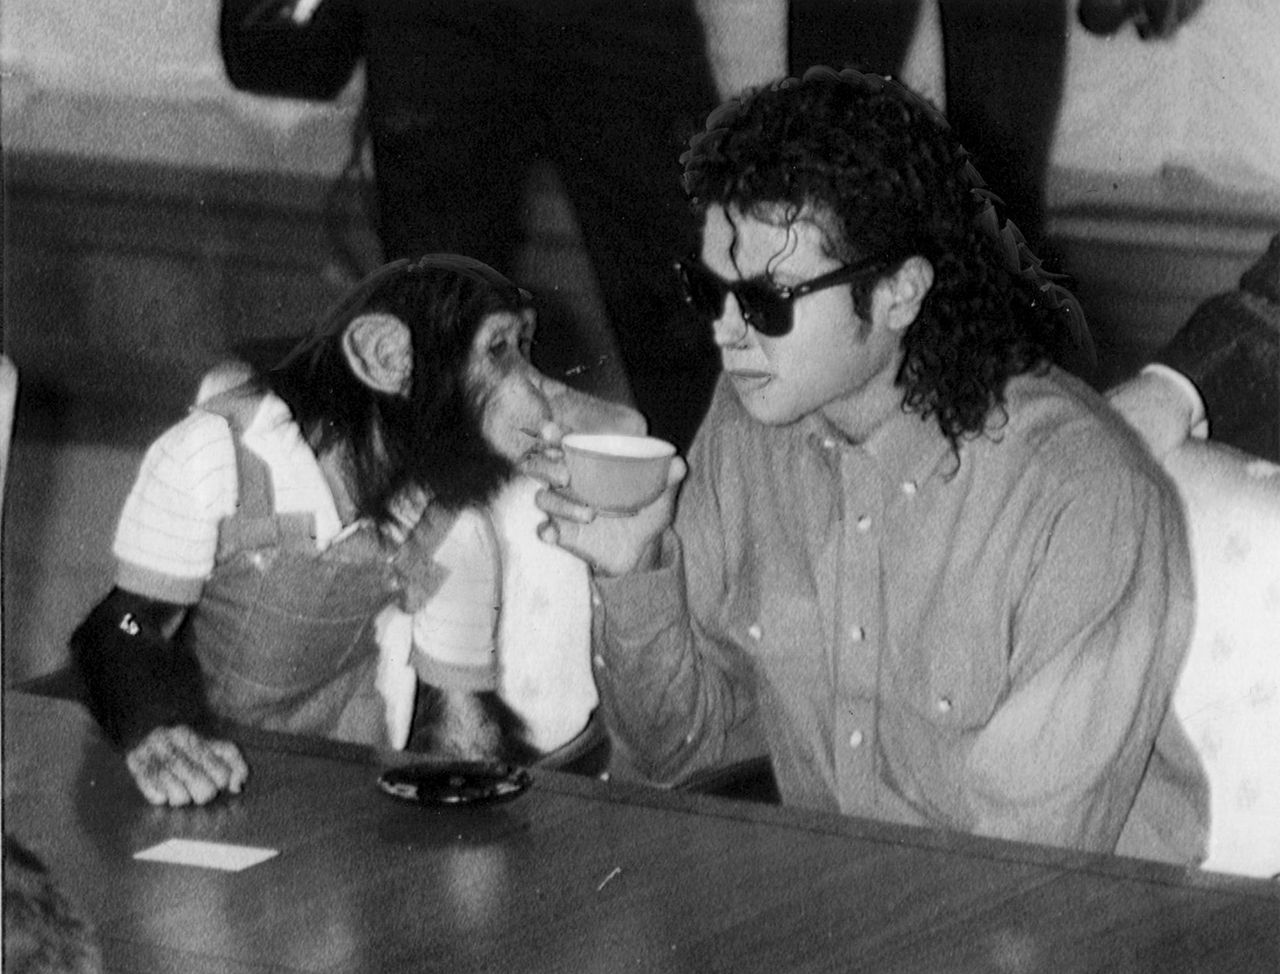 Michael Jackson's beloved chimp Bubbles enjoys a lavish retirement